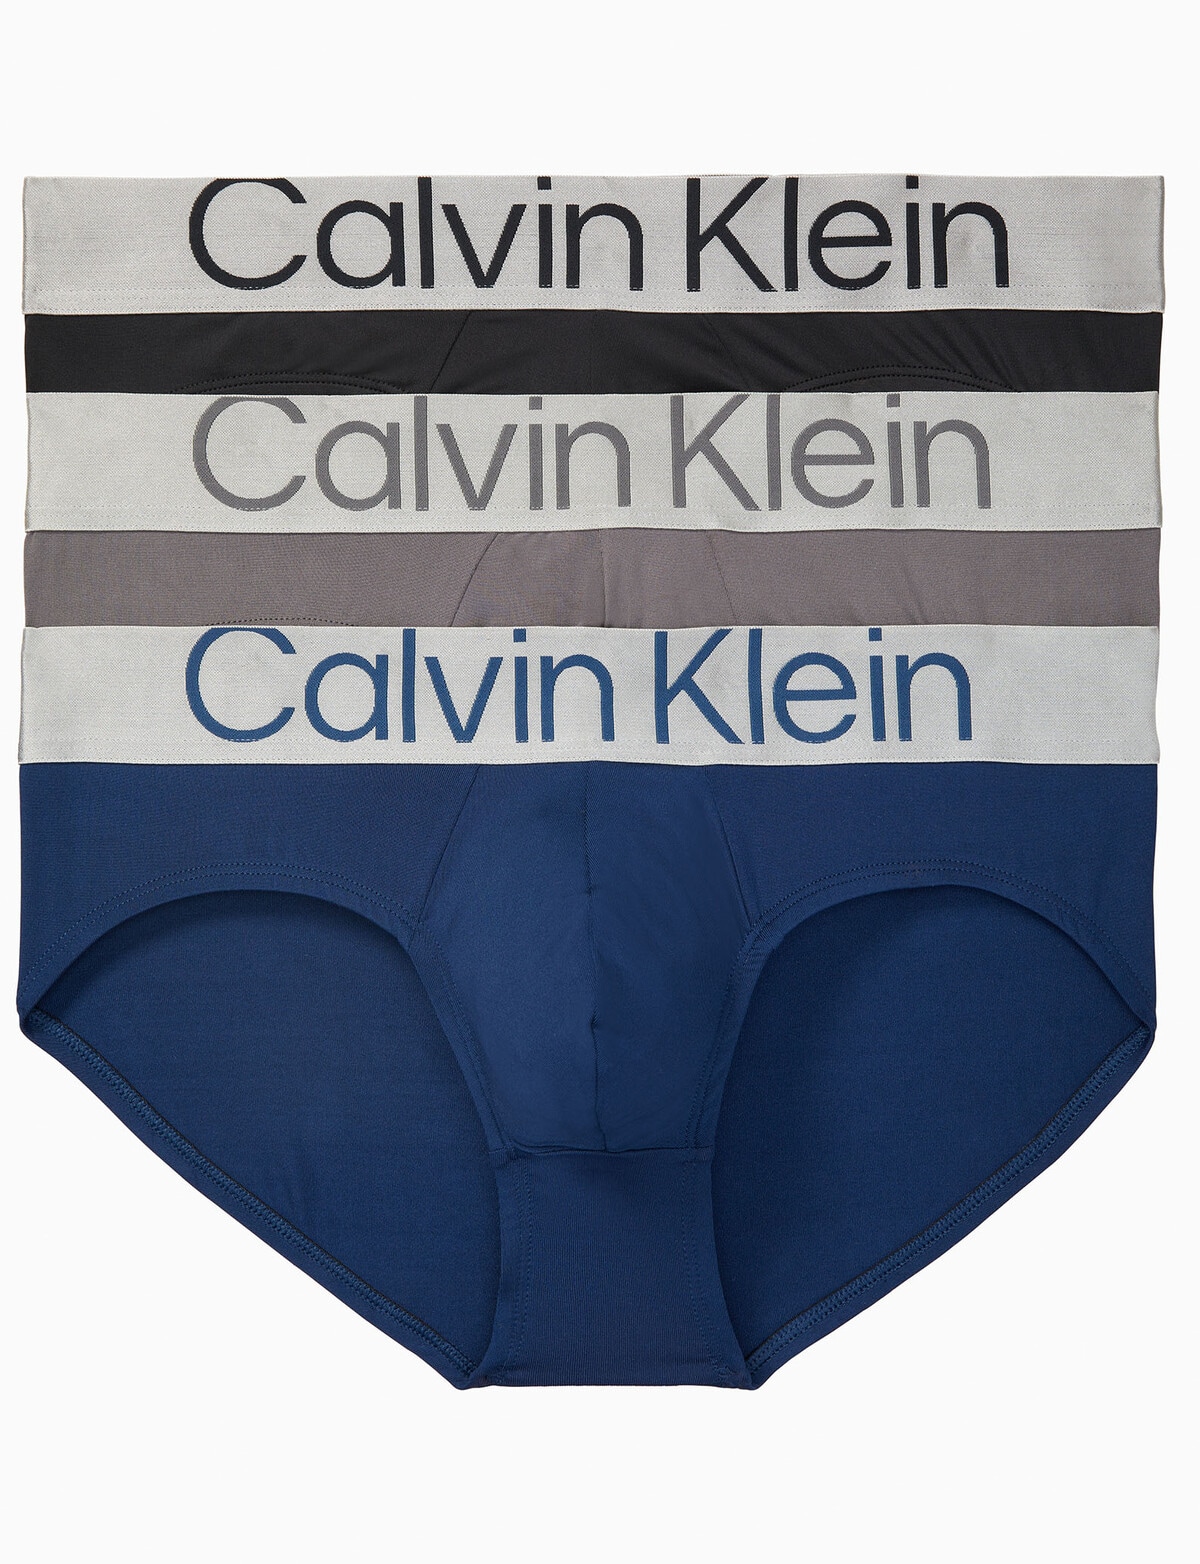 C K Underwear - Women Pack Of 3 Briefs – The Brand Stock